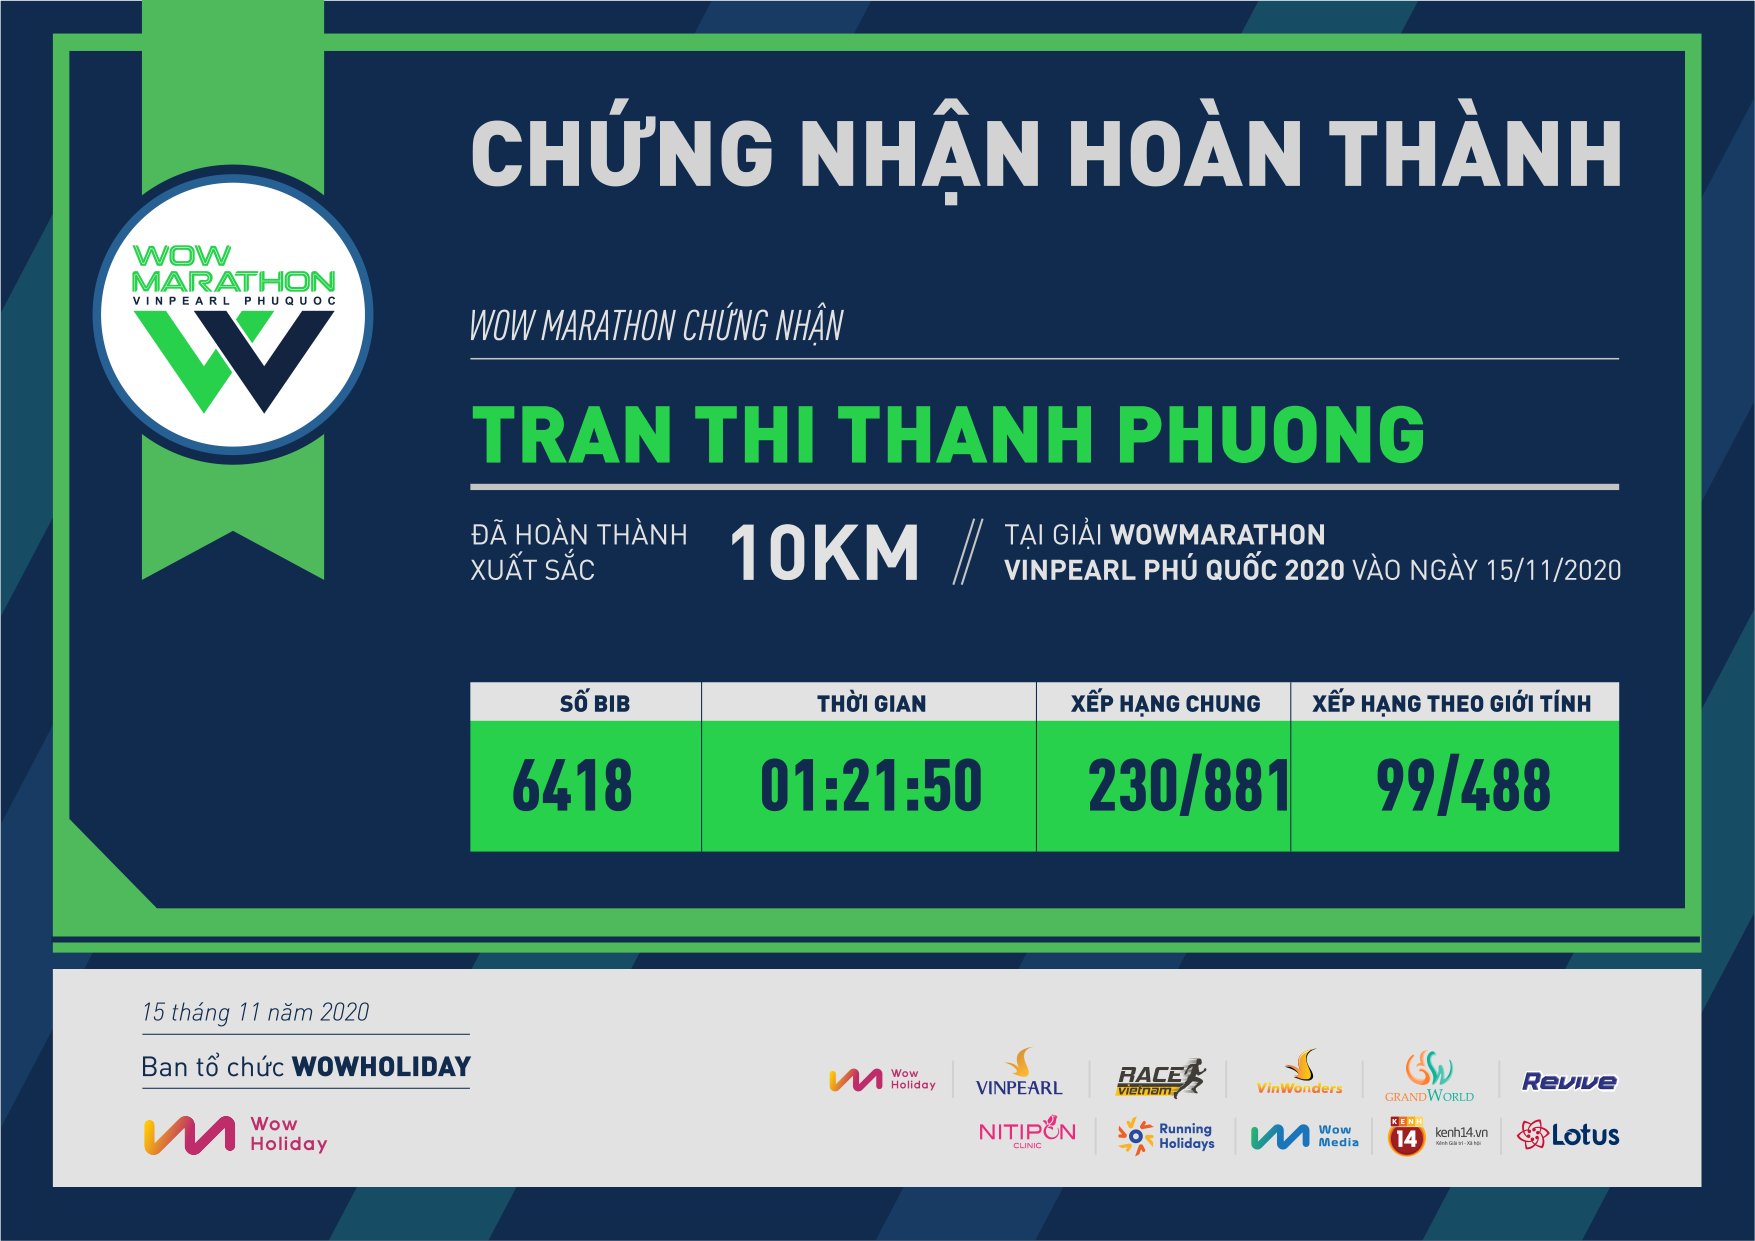 6418 - Tran Thi Thanh Phuong